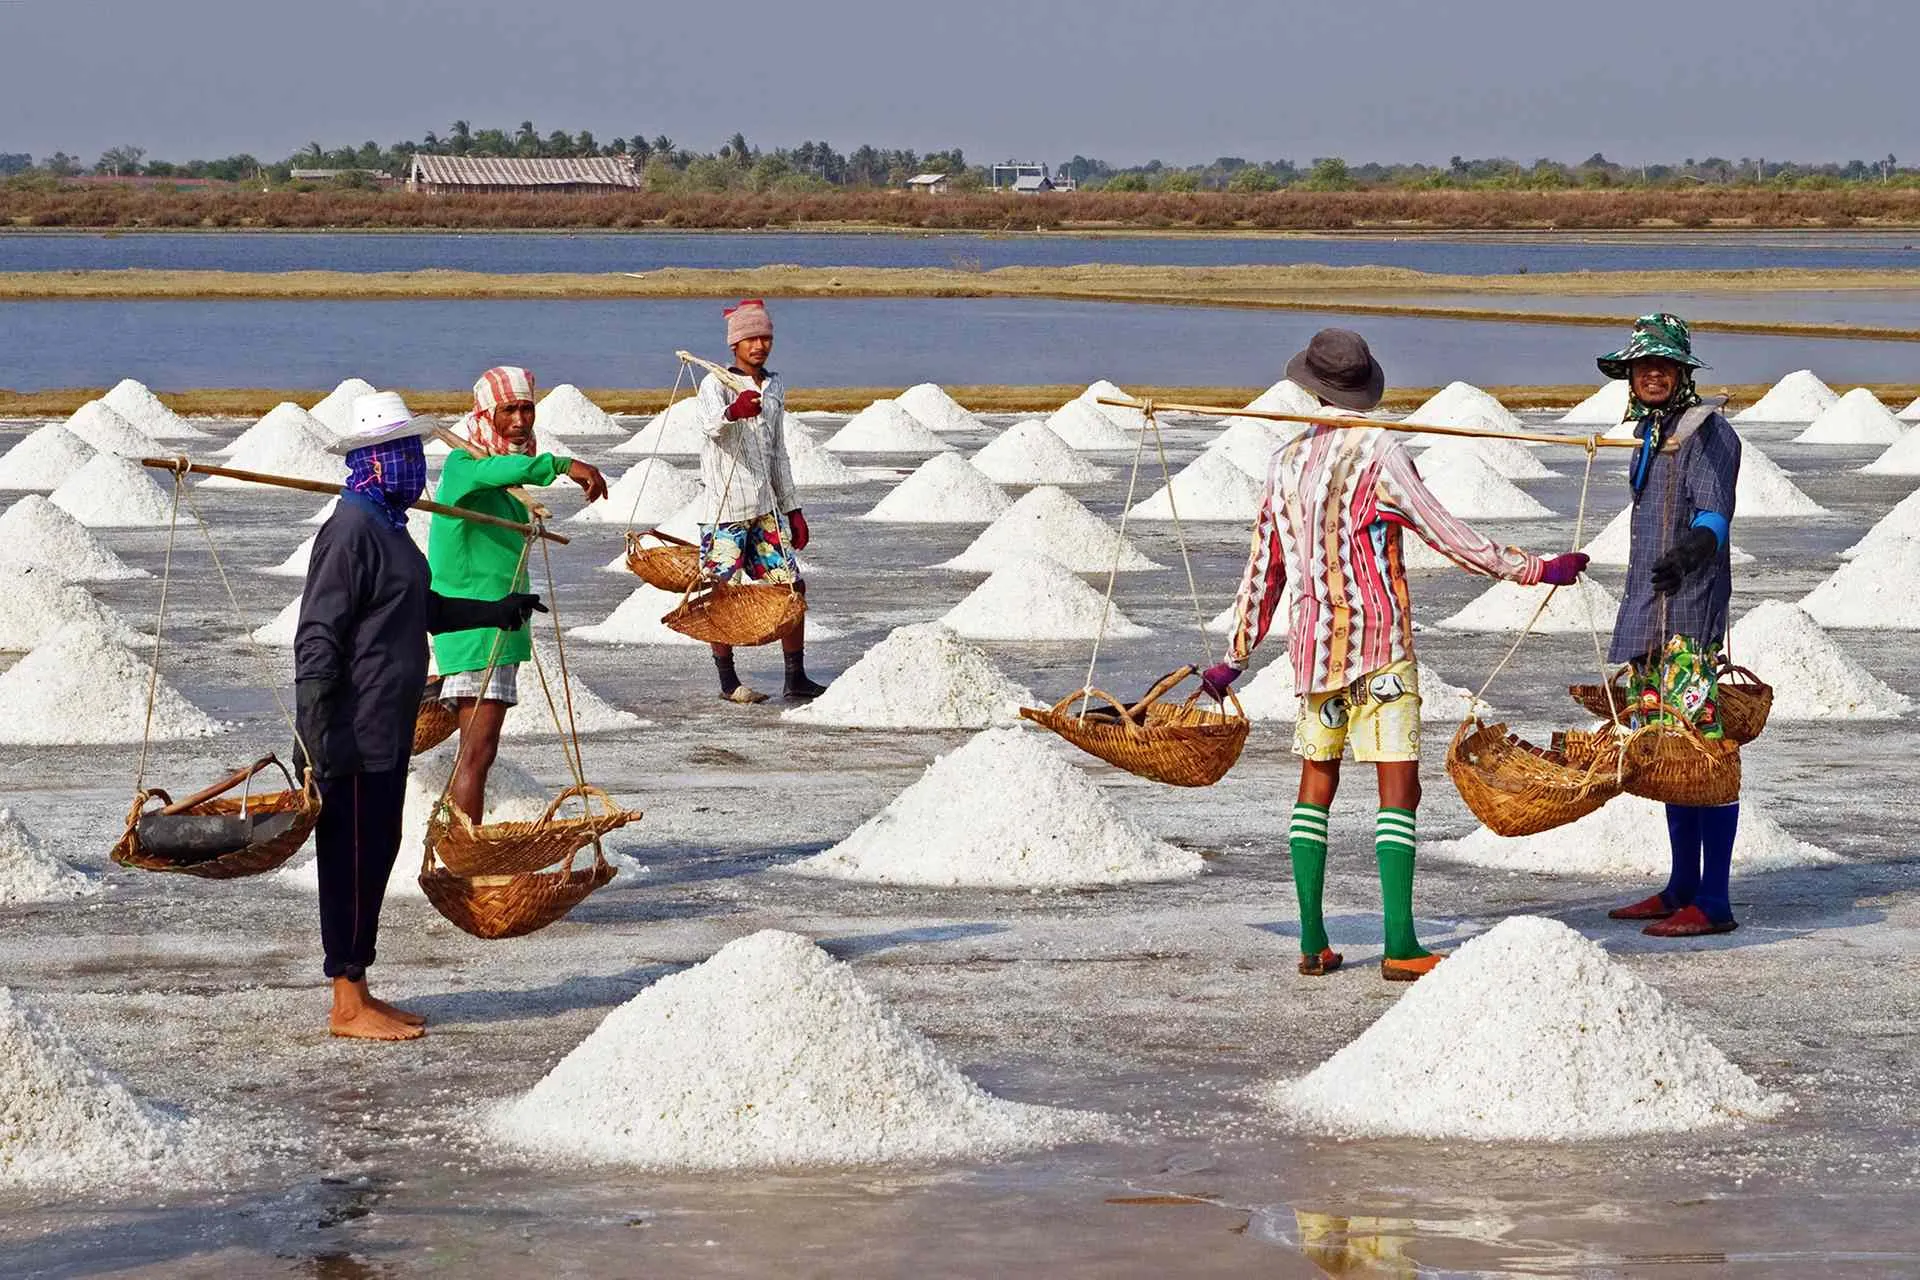 Salt brands tested